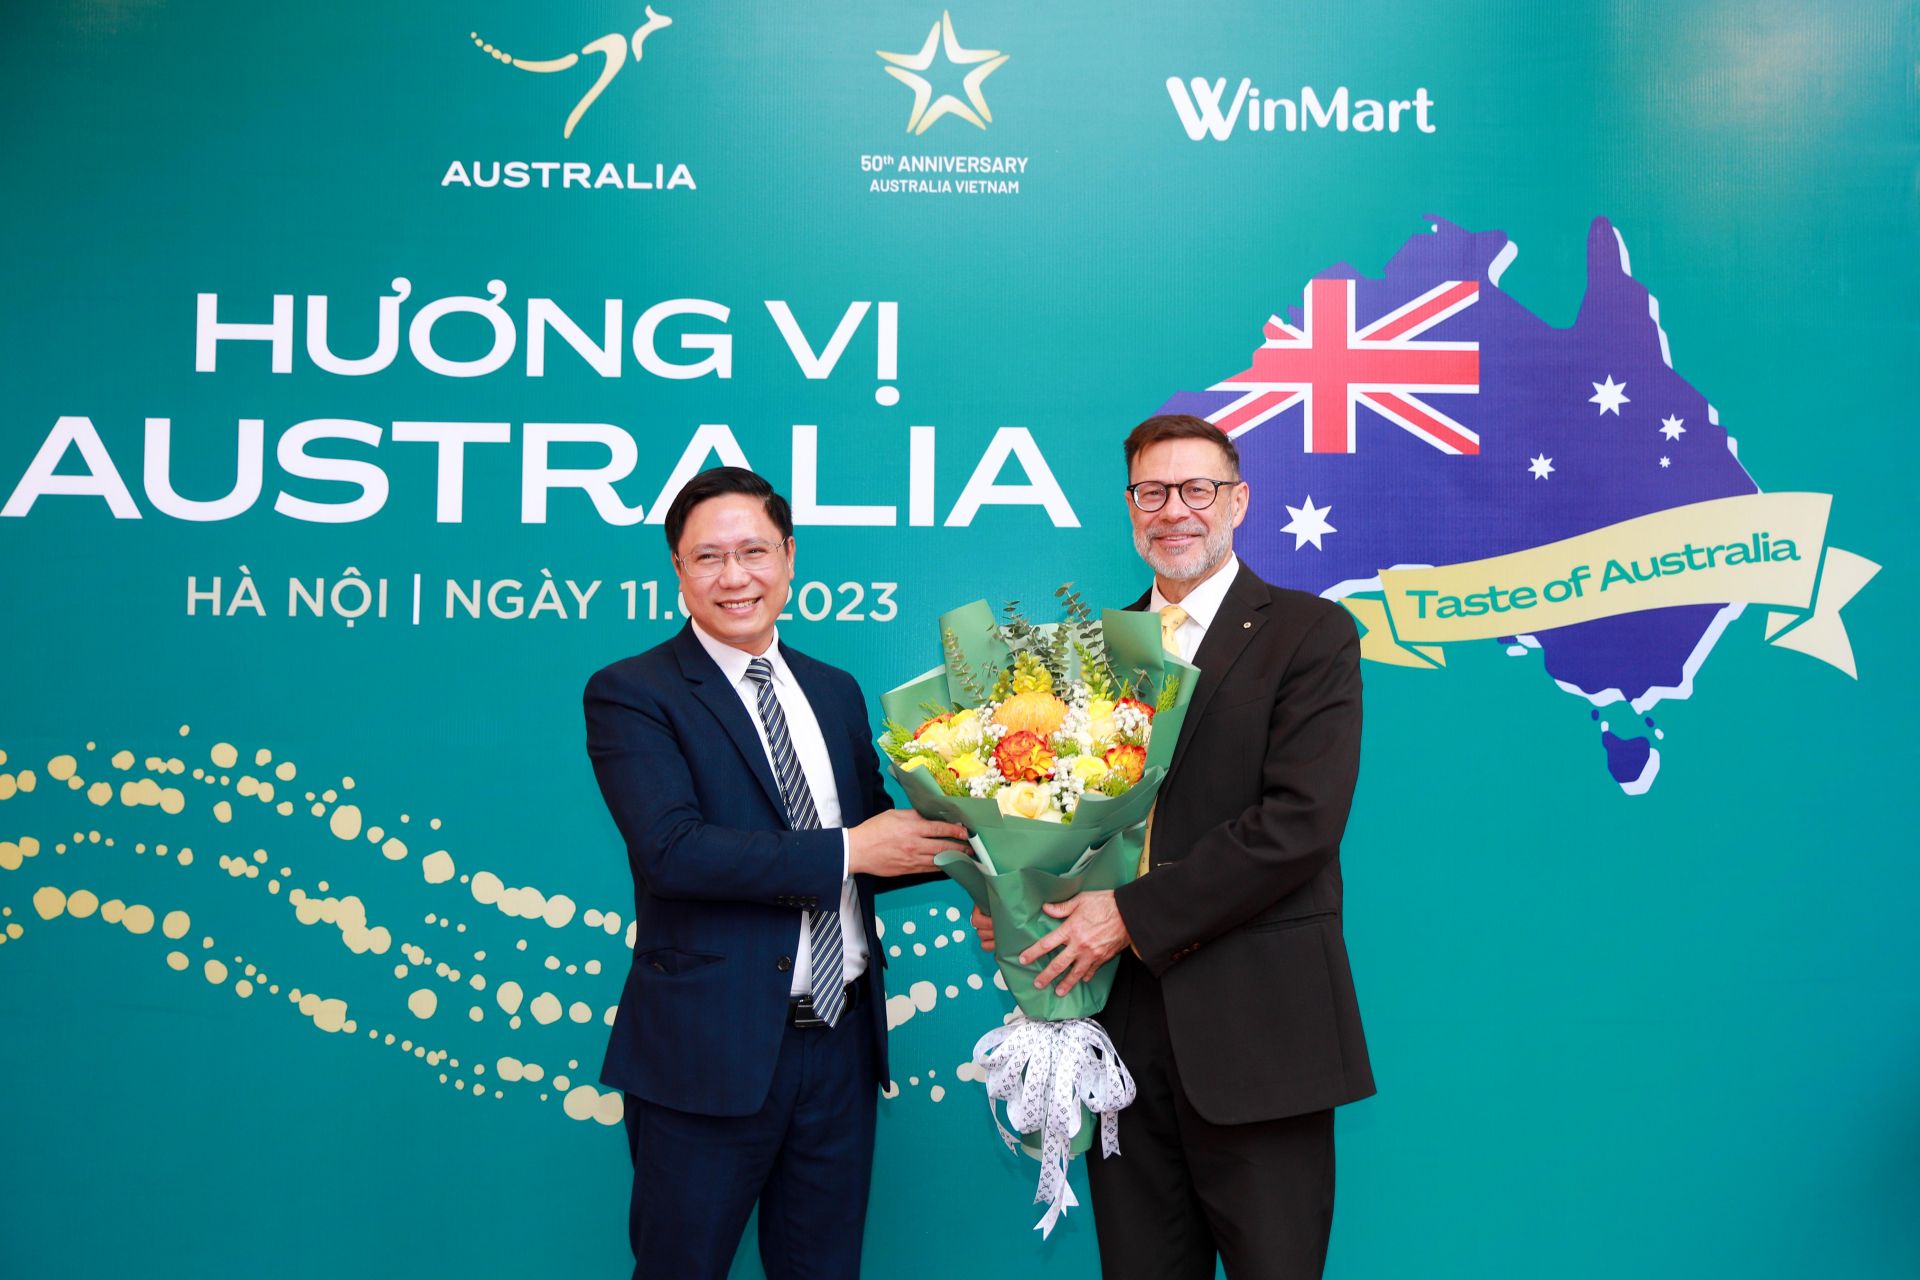 WinCommerce phối hợp cùng chính phủ Australia tổ chức Lễ hội Hương vị Australia 2023